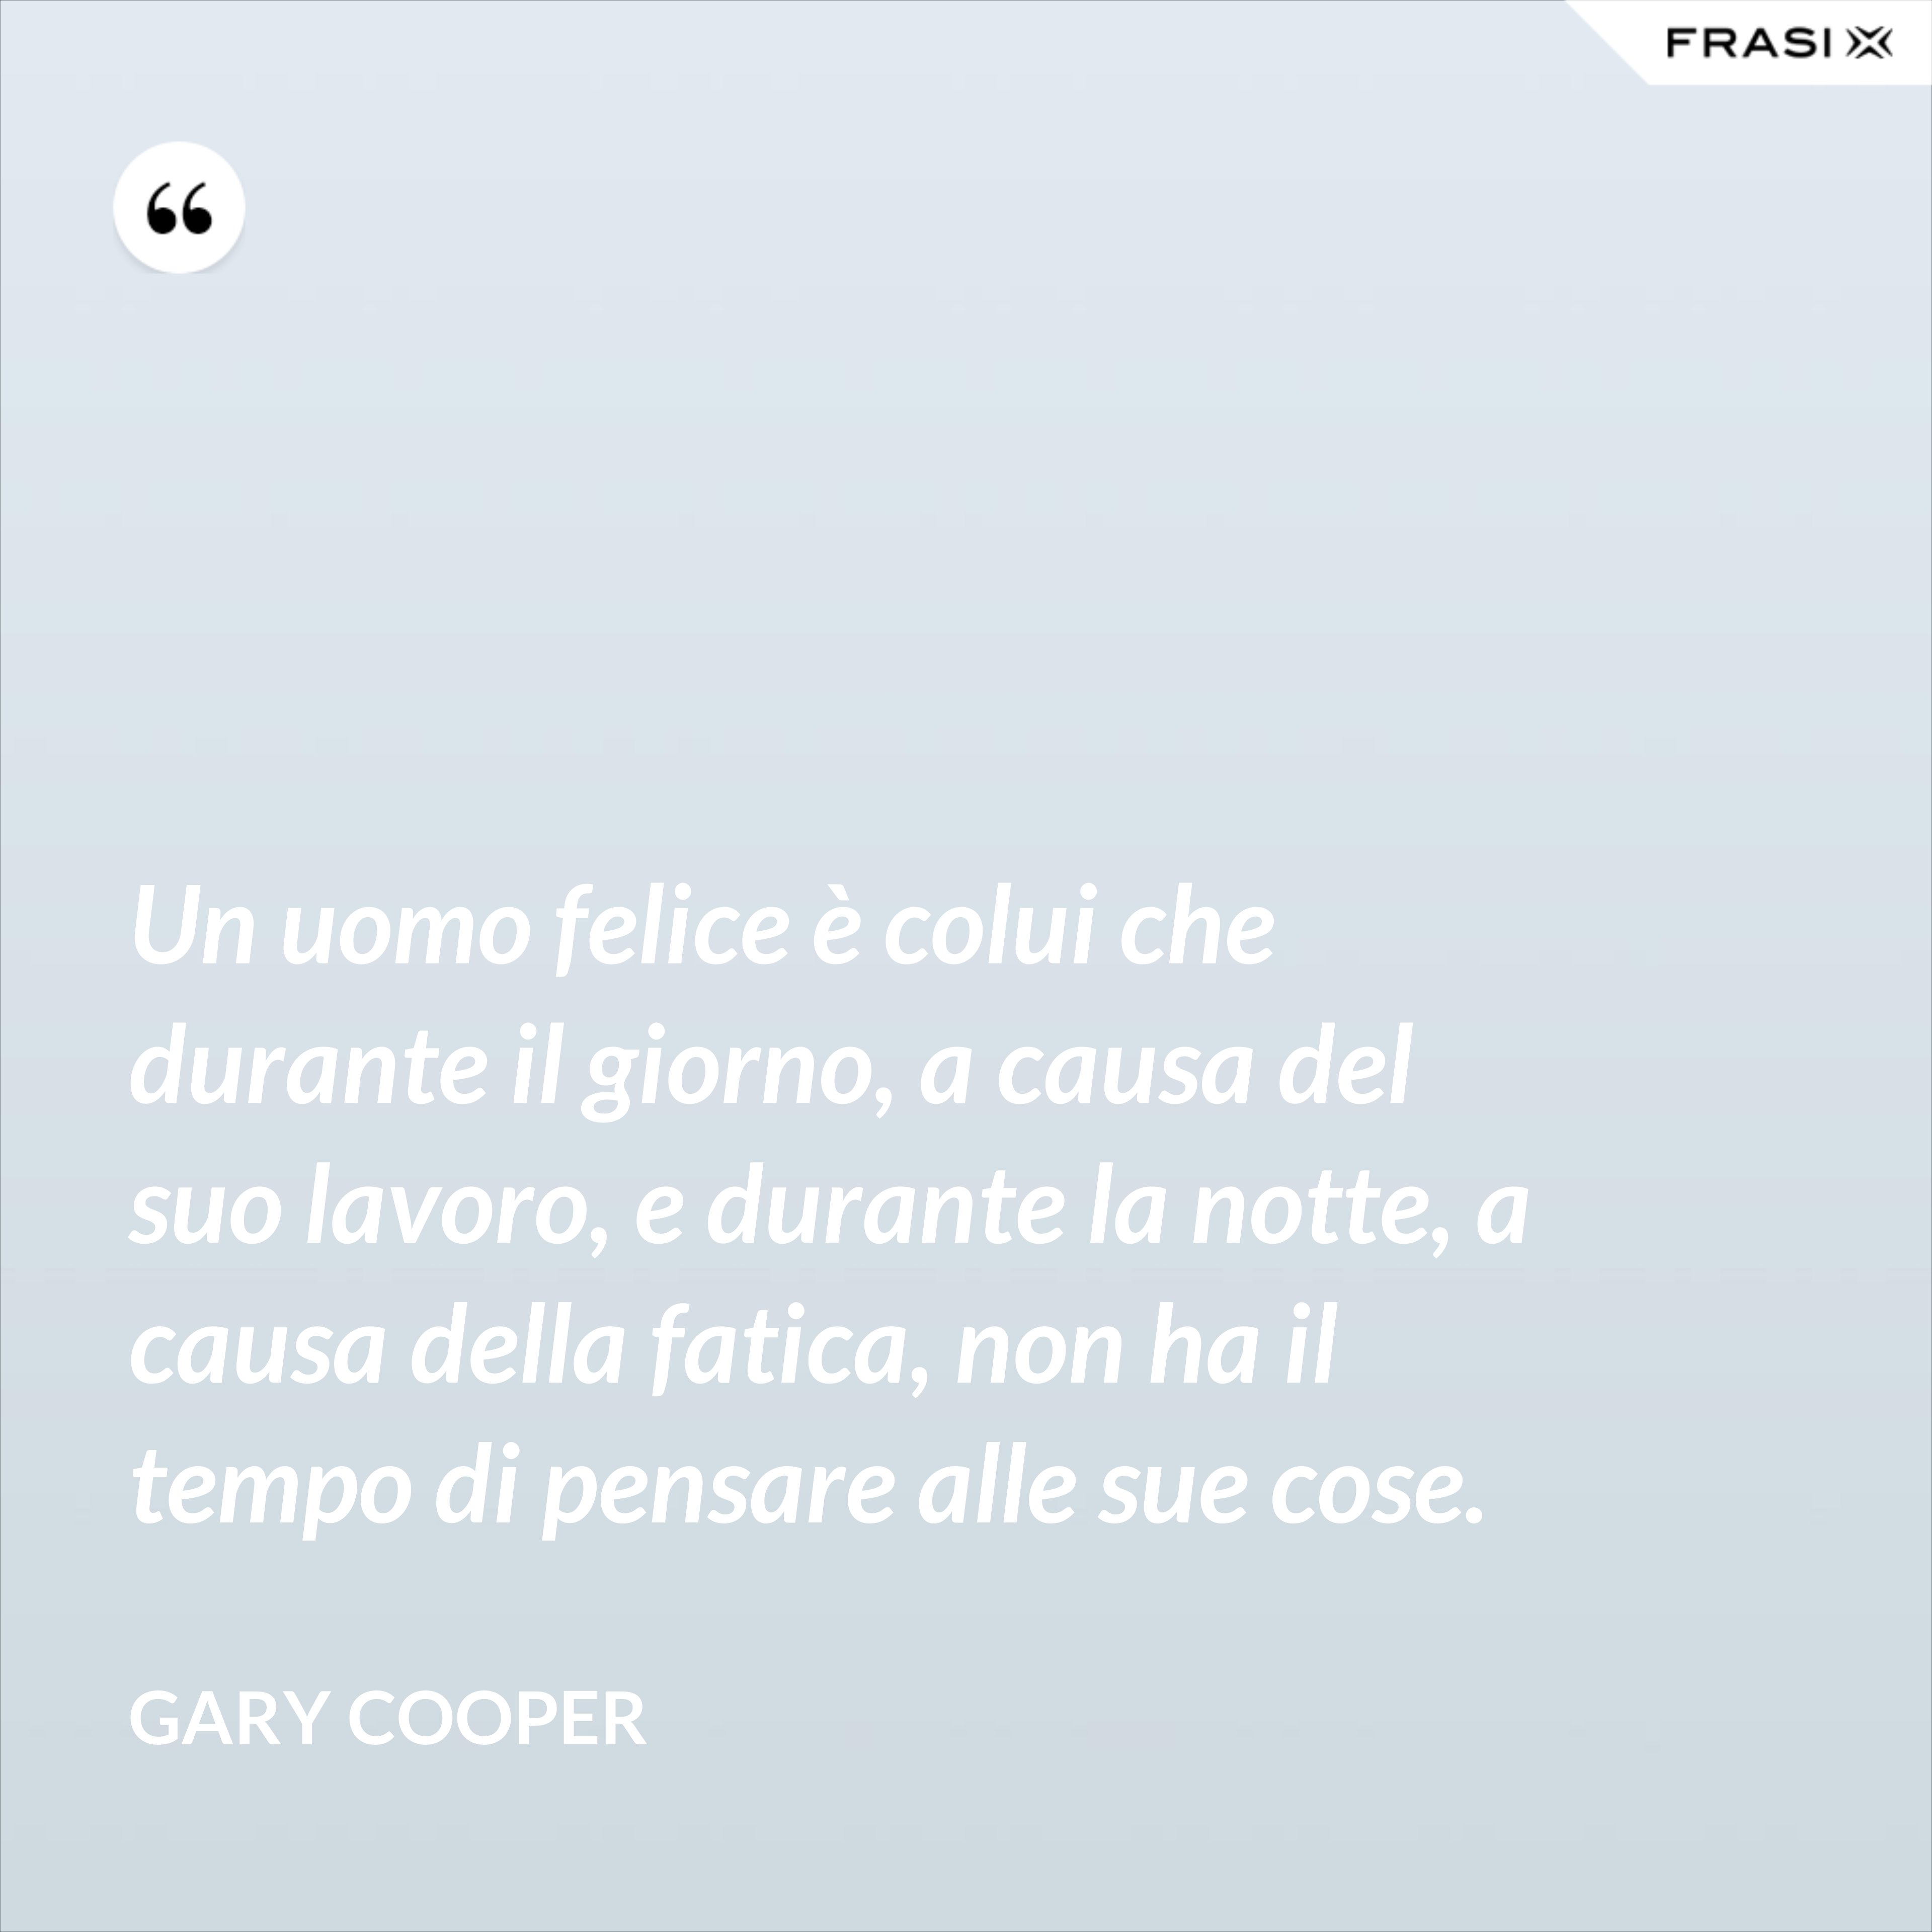 Un uomo felice è colui che durante il giorno, a causa del suo lavoro, e durante la notte, a causa della fatica, non ha il tempo di pensare alle sue cose. - Gary Cooper